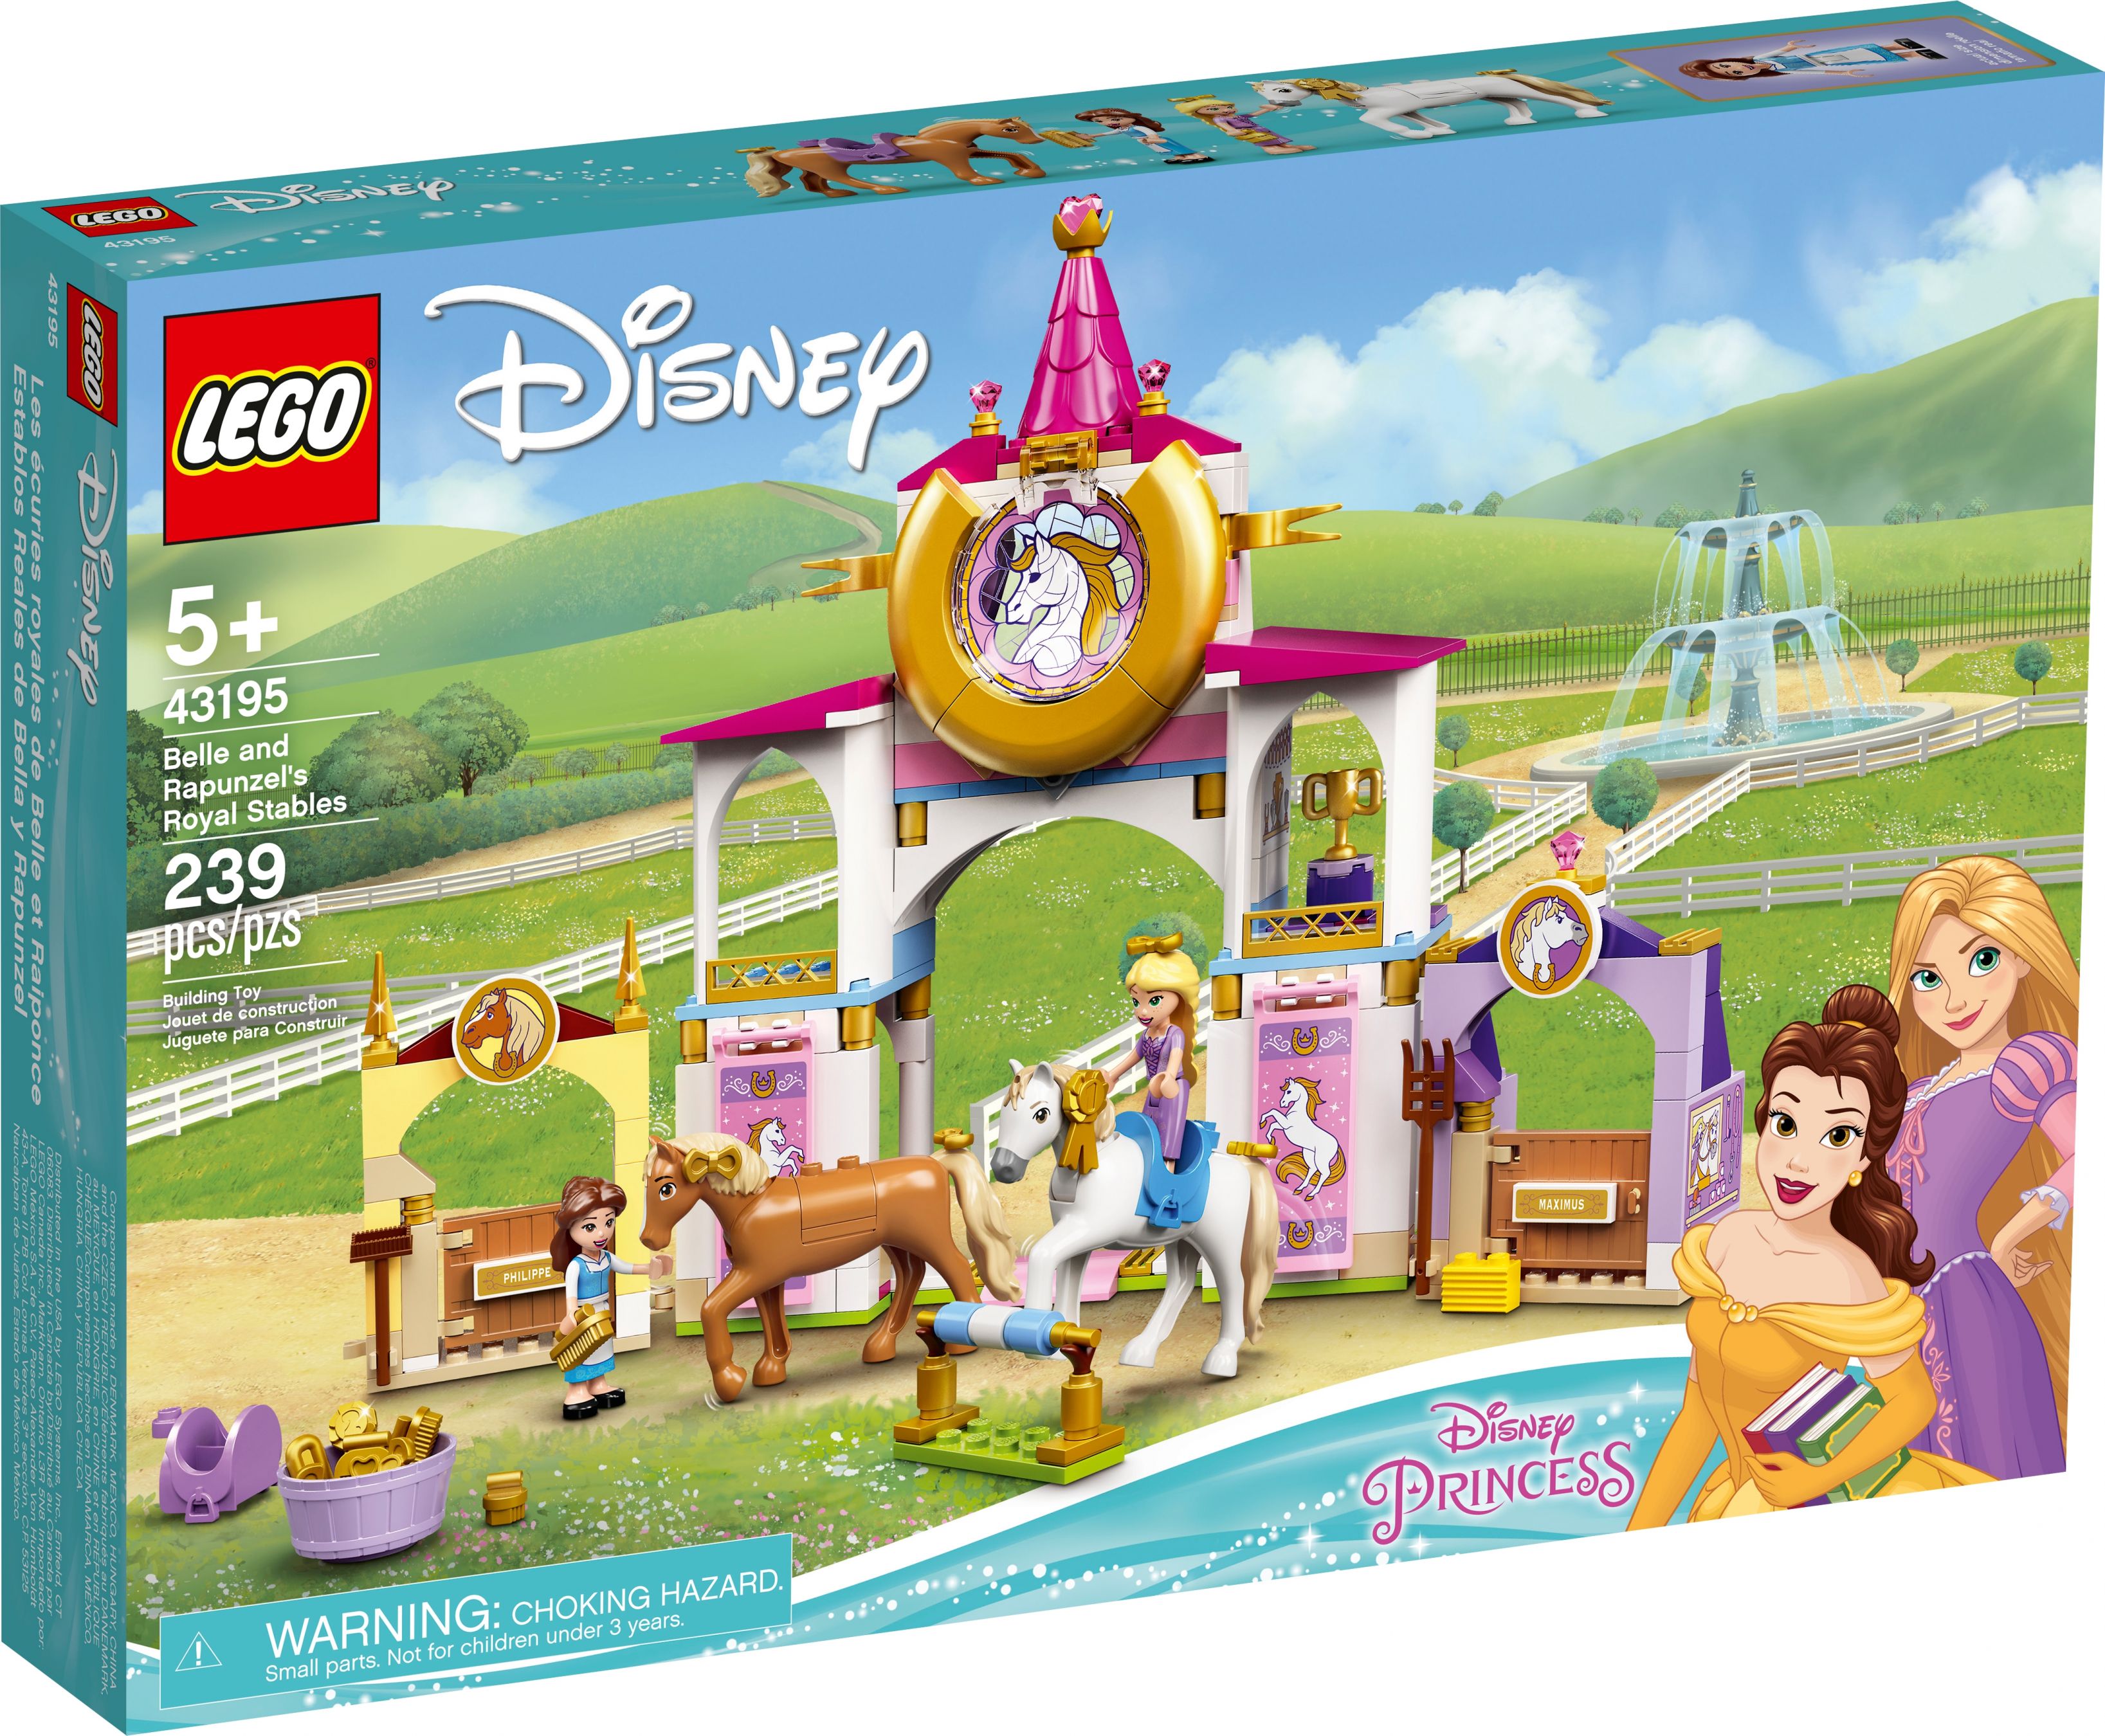 LEGO Disney 43195 Belles und Rapunzels königliche Ställe LEGO_43195_box1_v39.jpg